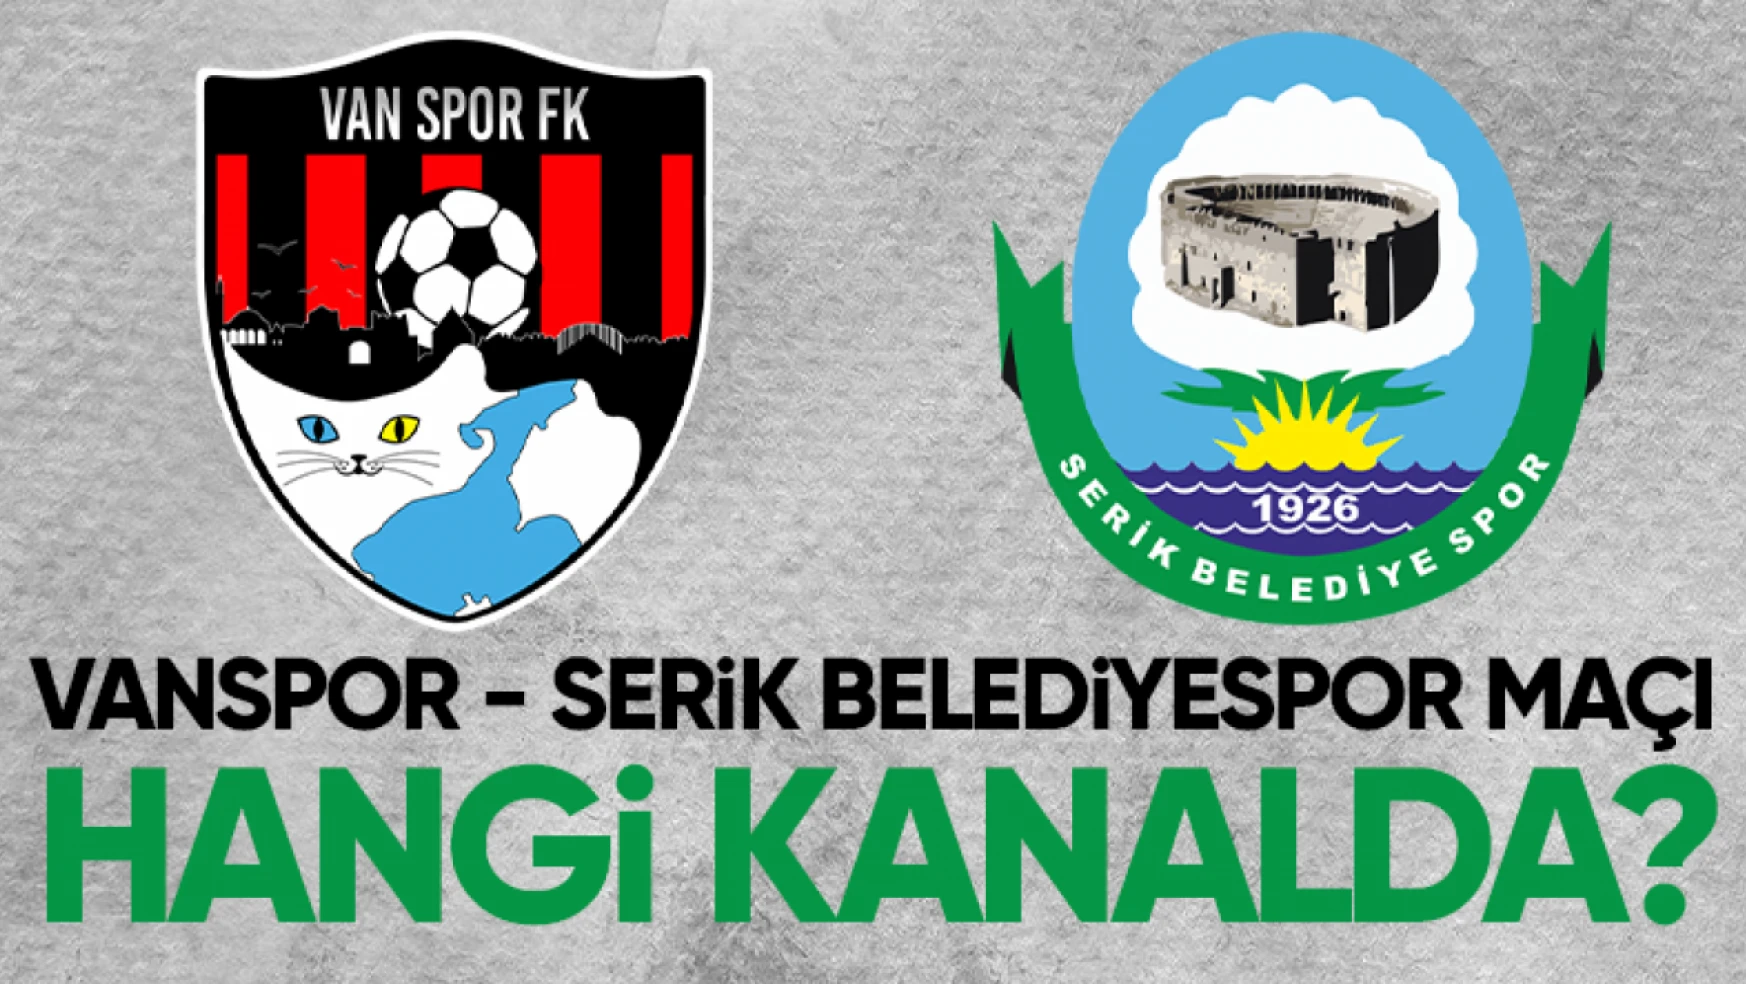 Vanspor - Serik Belediyespor maçı hangi kanalda?